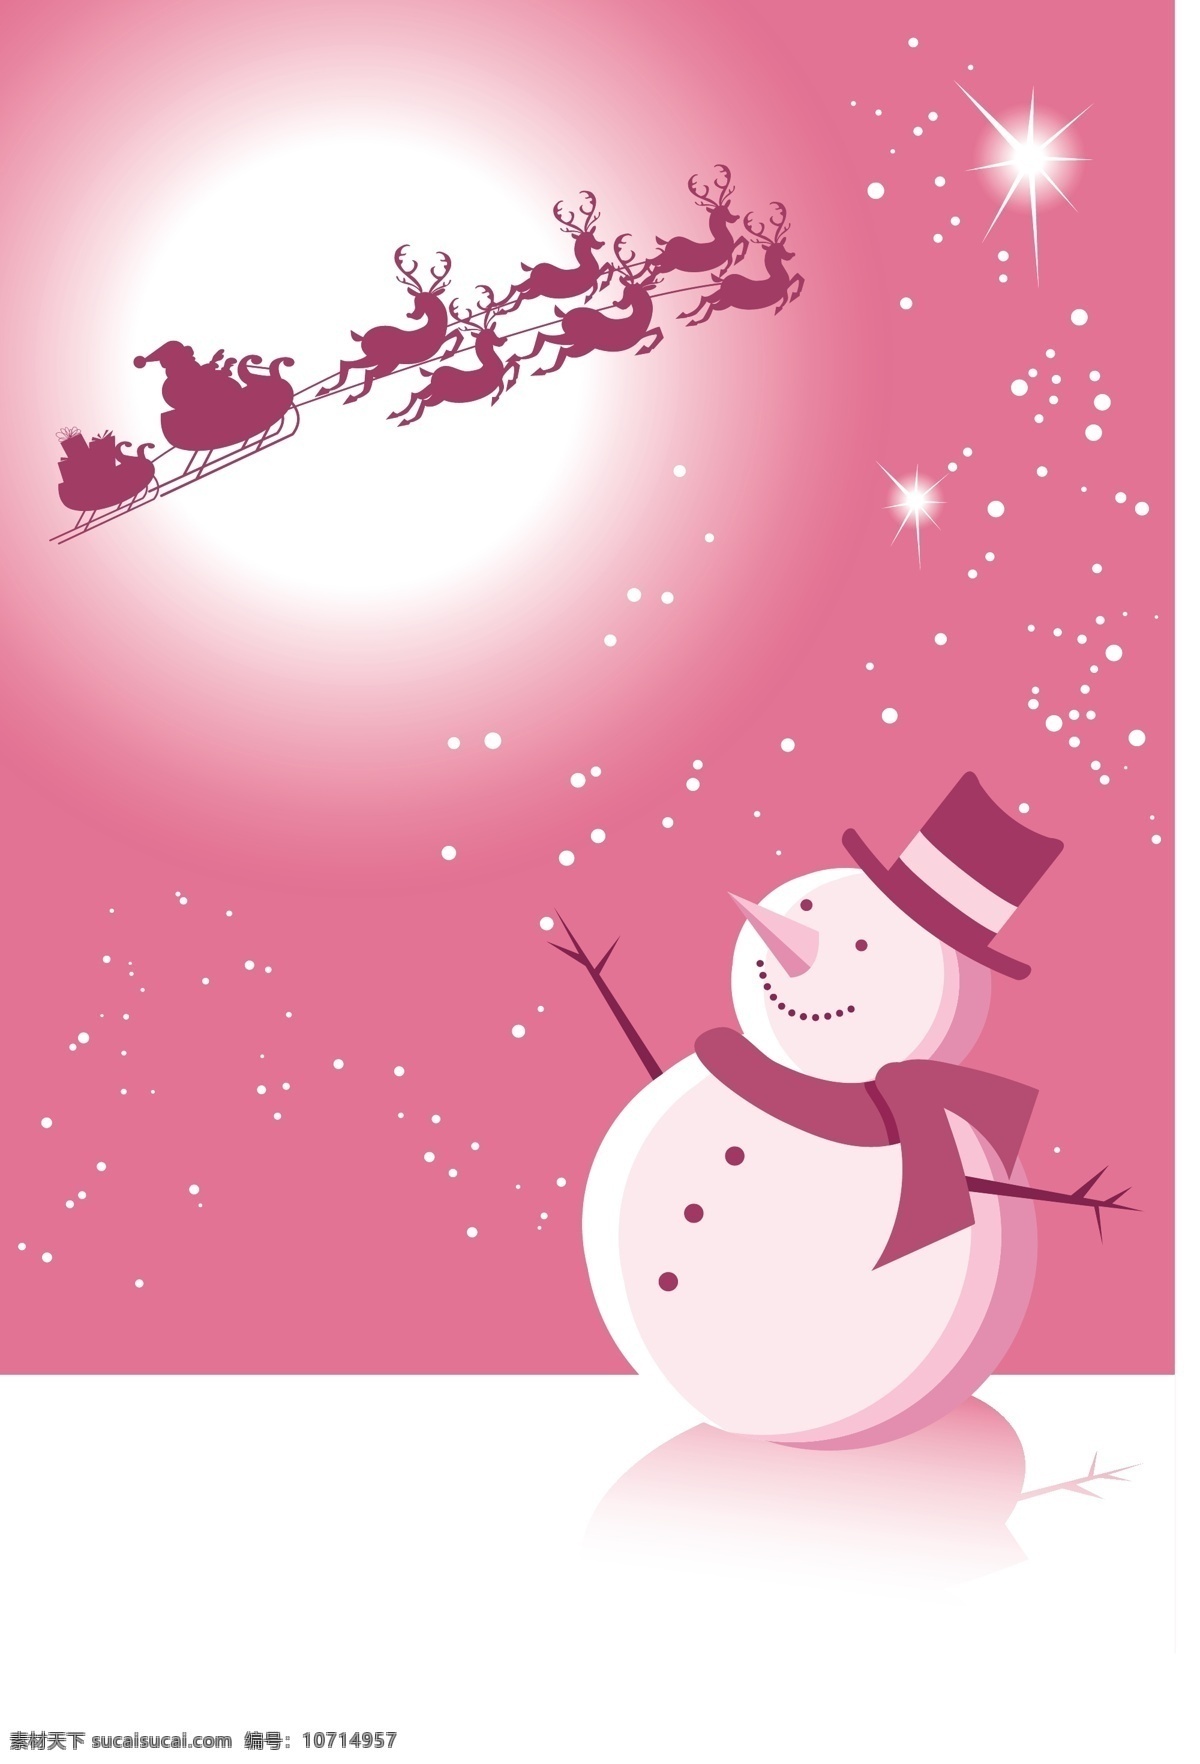 背景 贺卡 节日素材 卡片 卡通 可爱 梦幻 圣诞 圣诞节 雪人 矢量 模板下载 圣诞雪人 圆月 雪橇 时尚 圣诞主题 psd源文件 请柬请帖